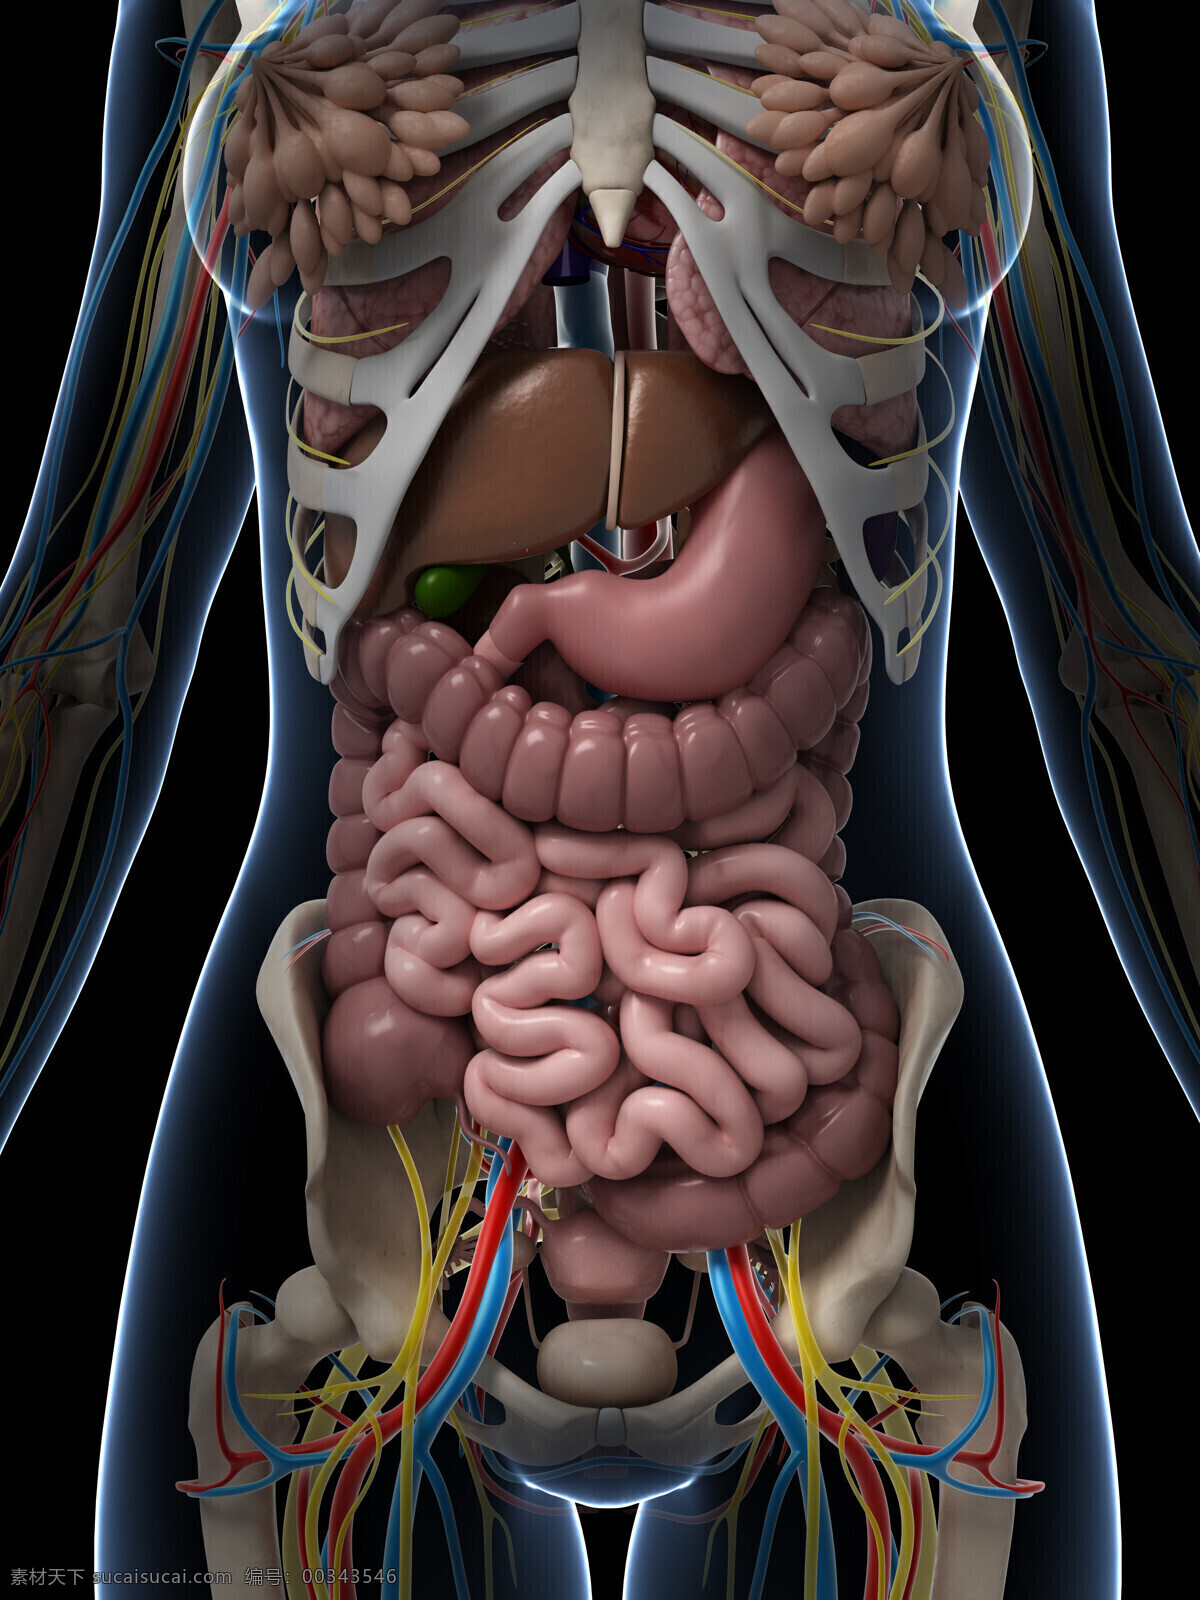 女性 内脏 器官 模型 女性器官 内脏器官 乳腺 肠胃器官 肝肠器官 人体器官 医学图片 医疗护理 现代科技